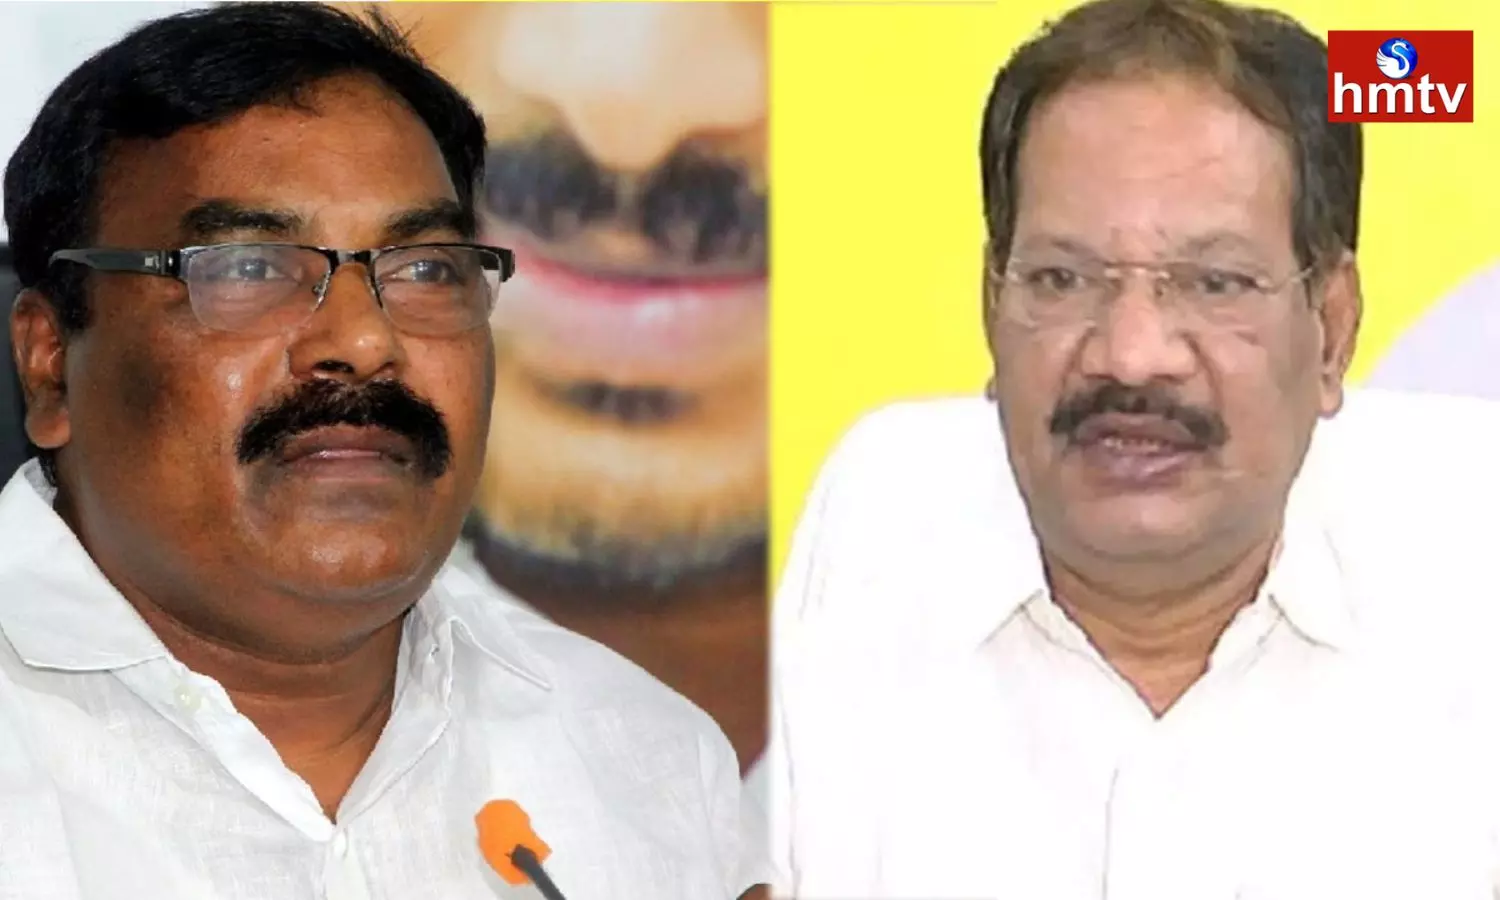 Minister Meruga Nagarjuna Accepted The Challenge Thrown By Nakka Ananda Babu